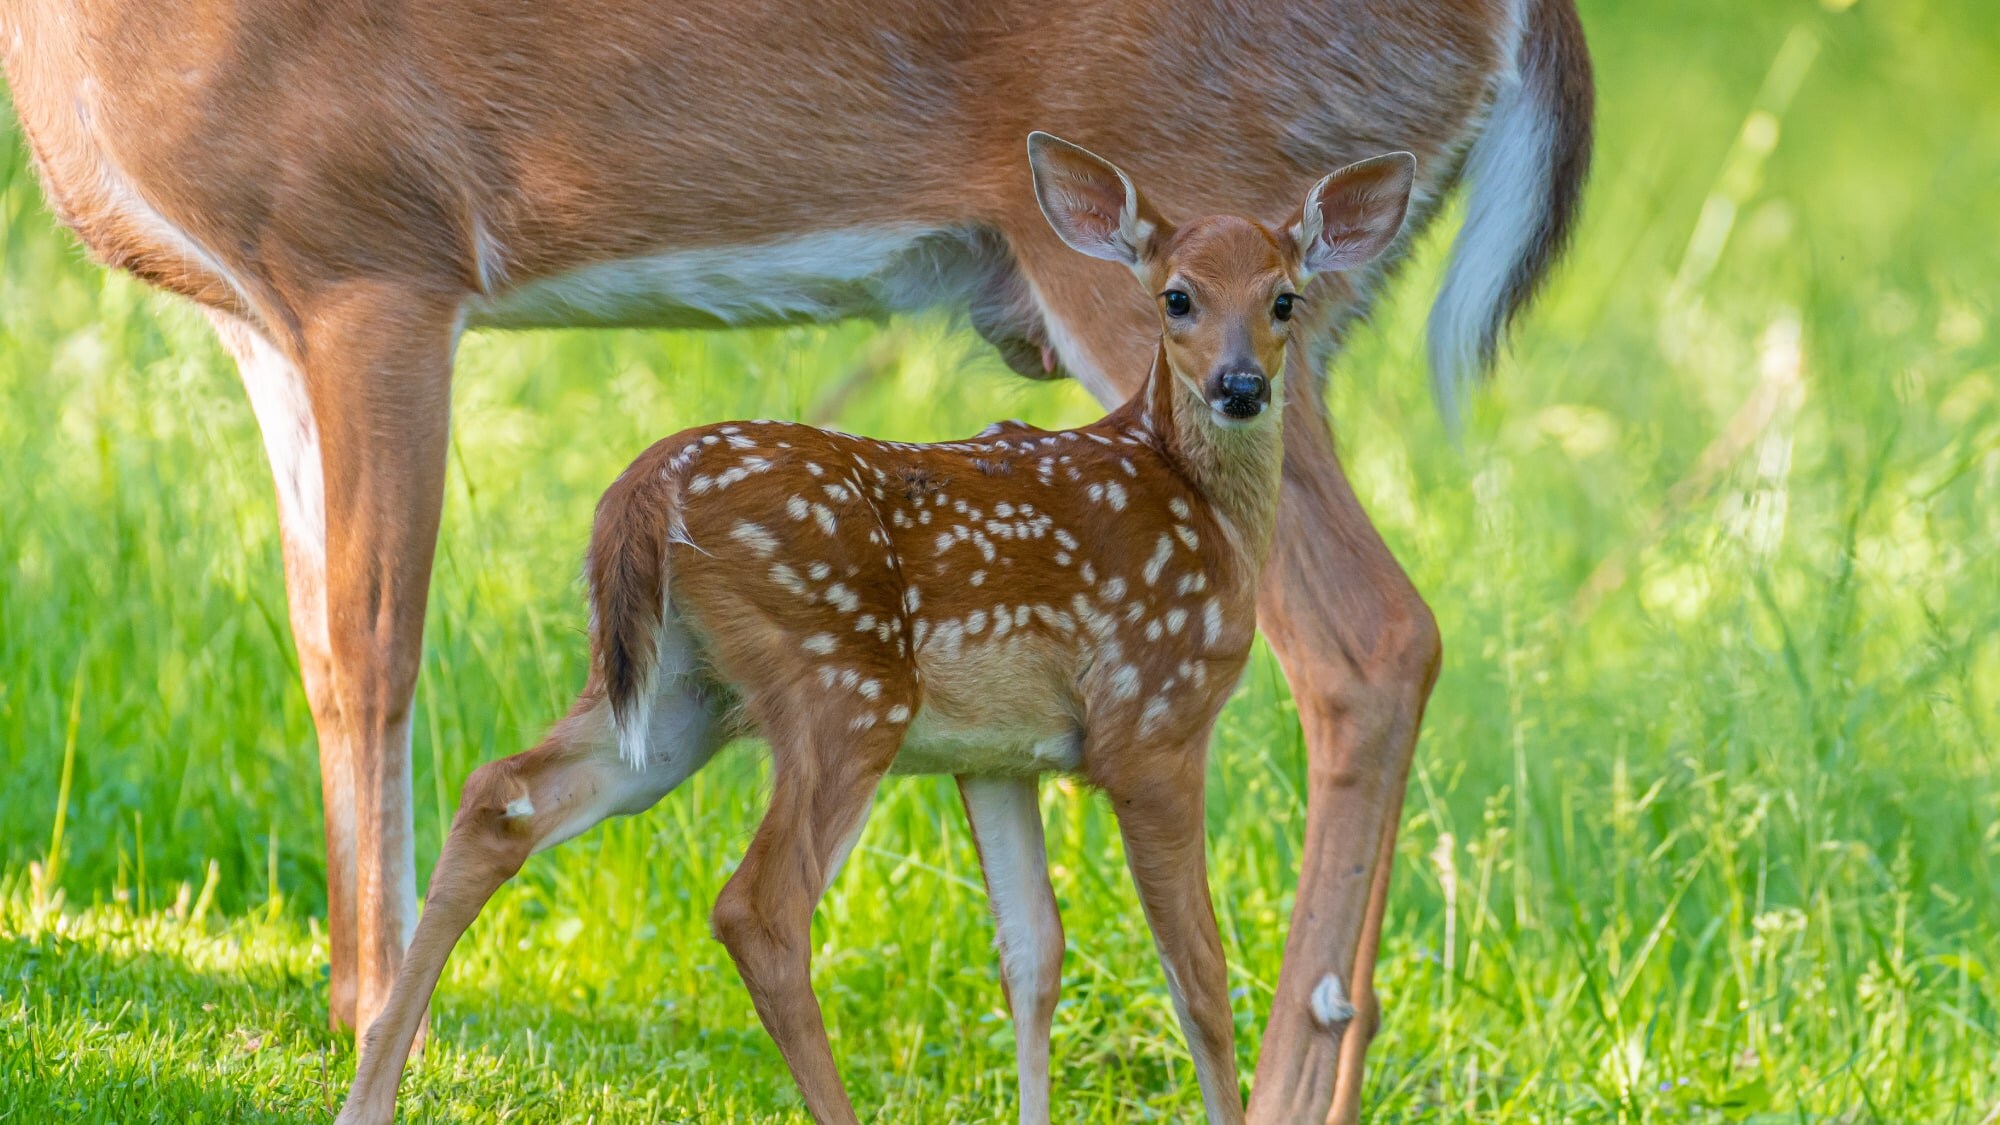 매년 5월 중반부터 7월경까지 아기 사슴의 탄생 시즌! 귀여운 새끼 사슴을 보러 오지 않겠습니까?